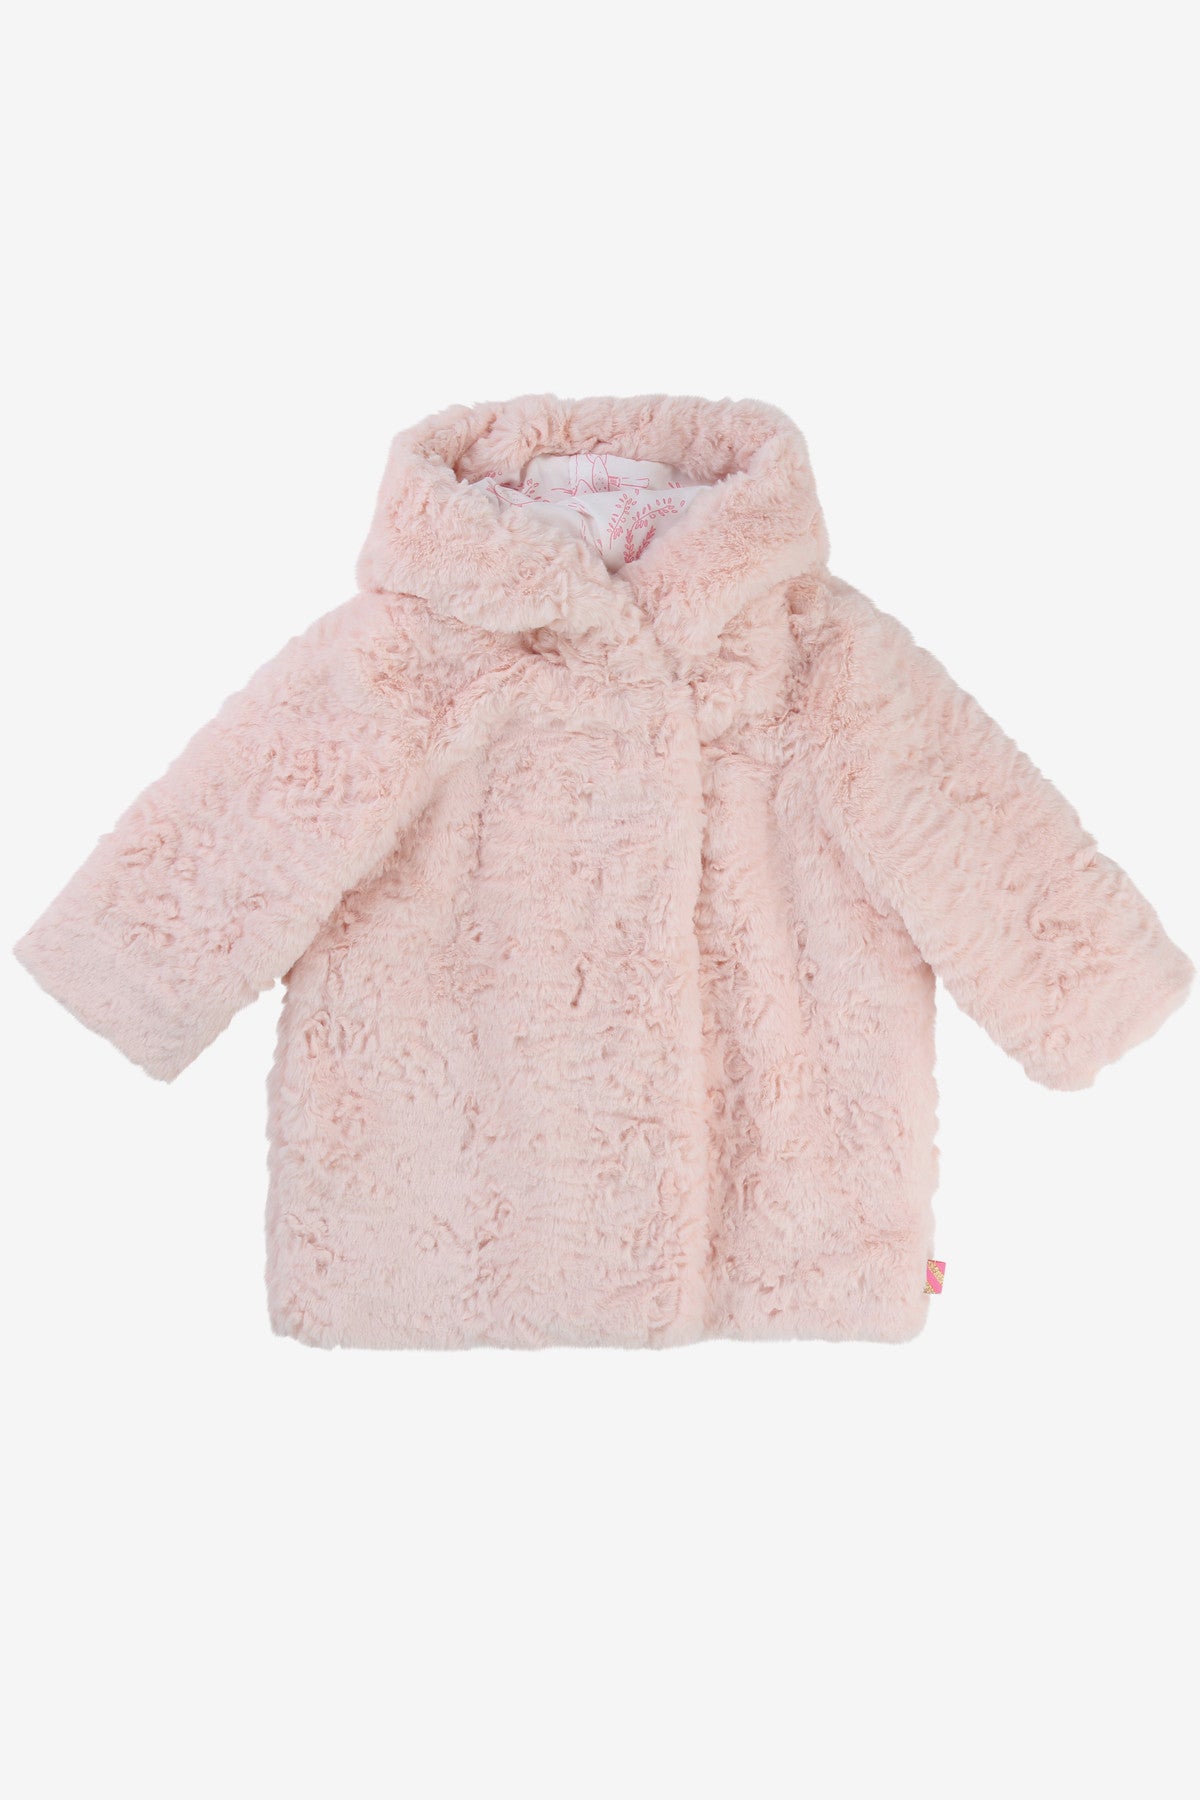 fur girls coat